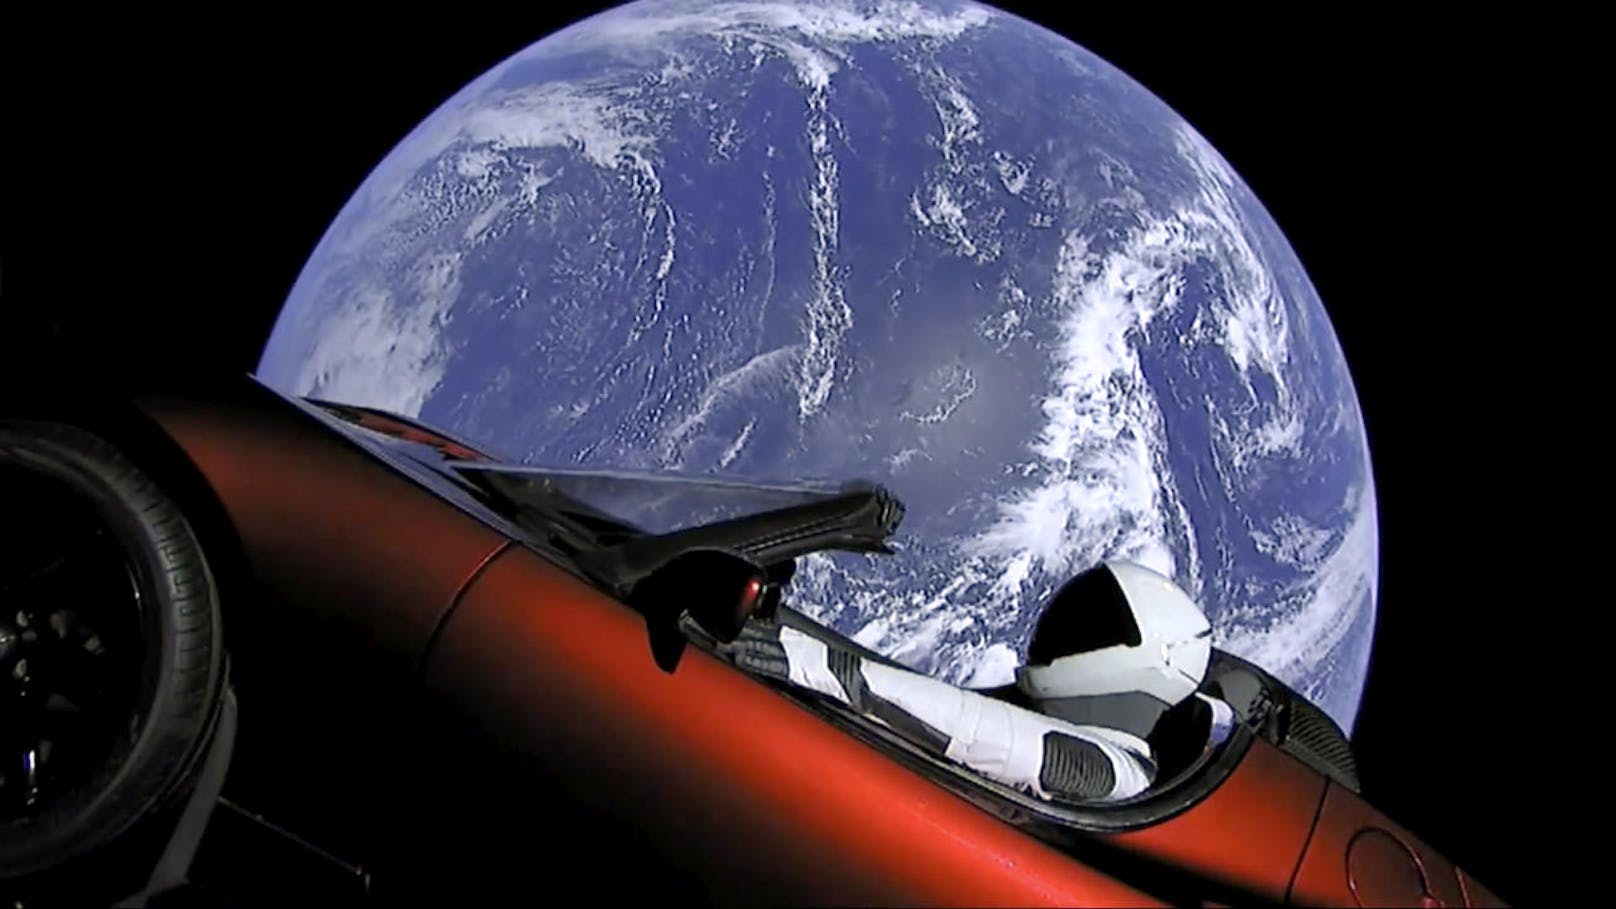 Mit an Bord: Ein Tesla Roadster, pilotiert von "Starman". Er ist auf dem Weg zum Mars und soll in eine Umlaufbahn um die Sonne gebracht werden.